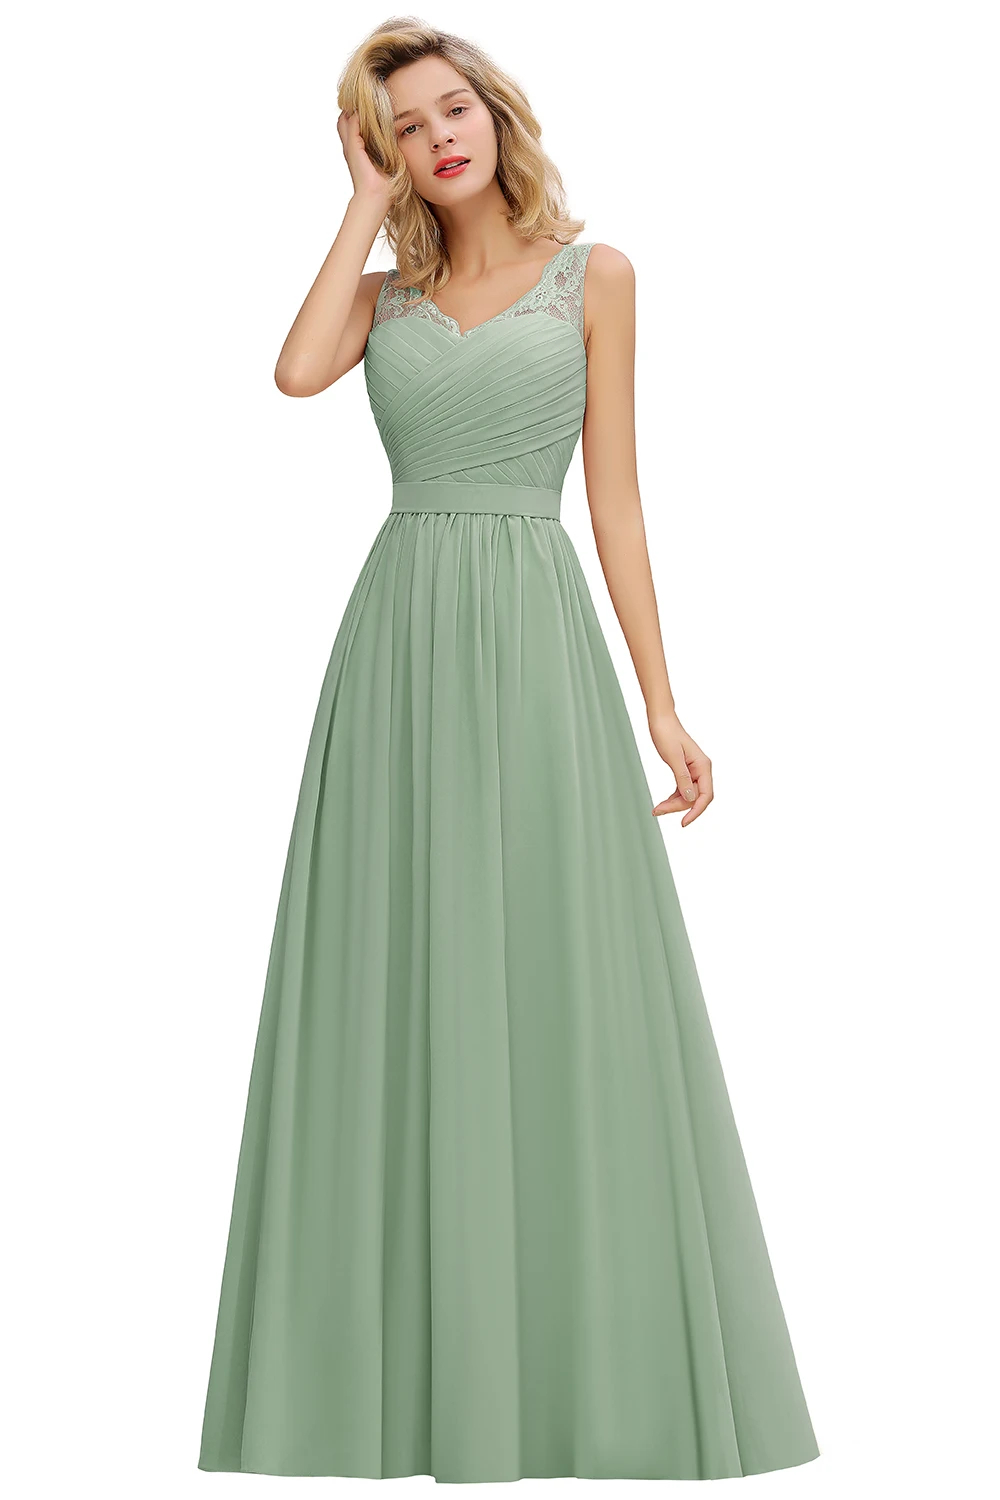 sage green dress  bridesmaid